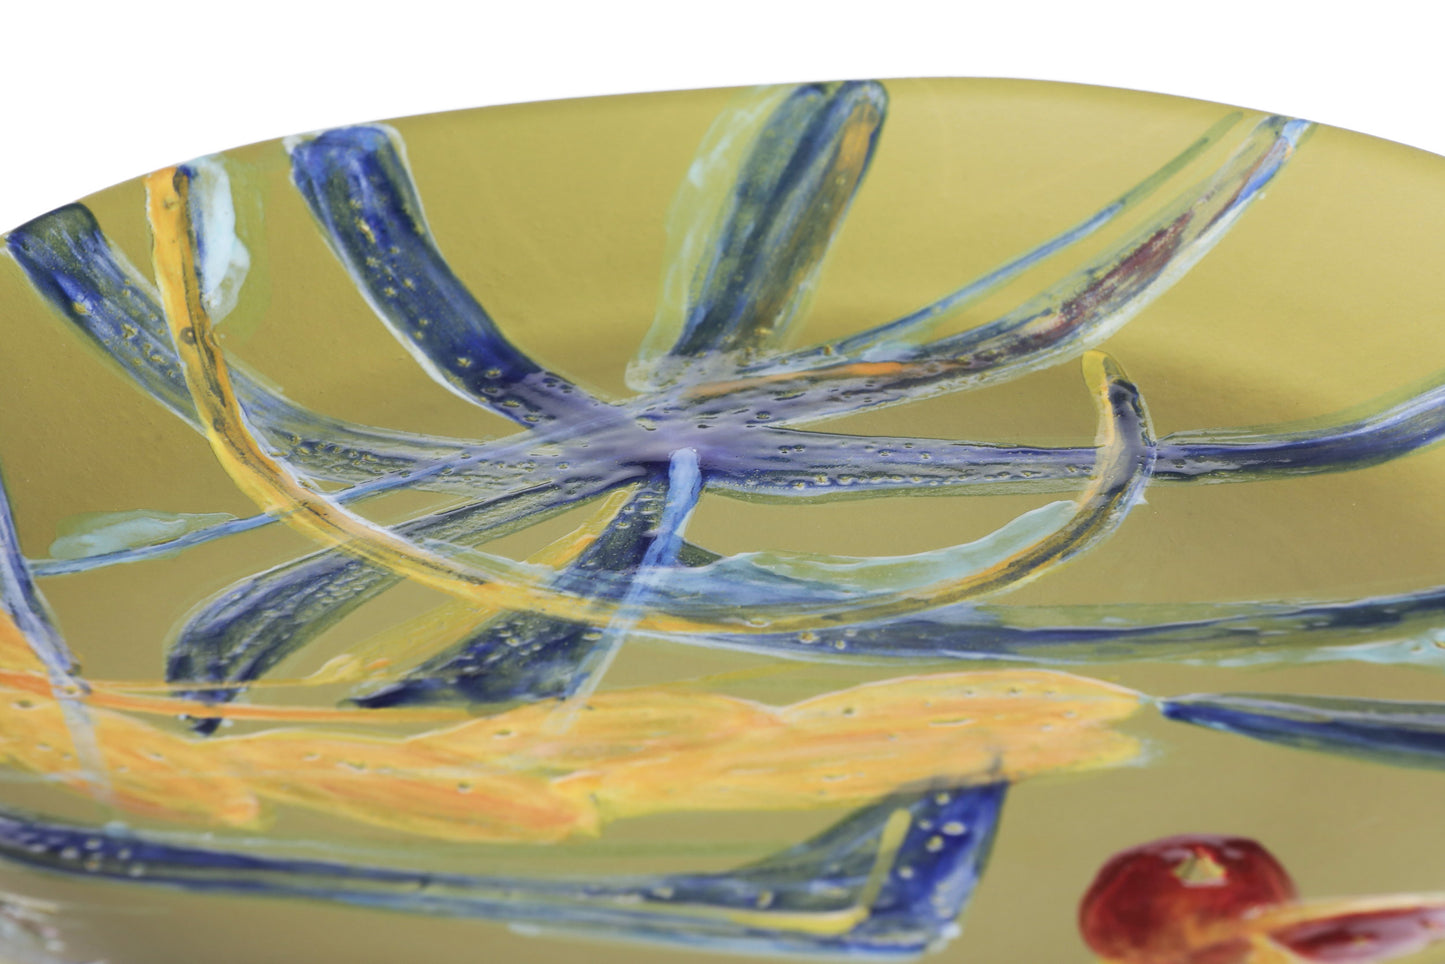 Large plate "The Avocado Collection" Ceramiche Rometti - Luisa Longo x Casa Triplef